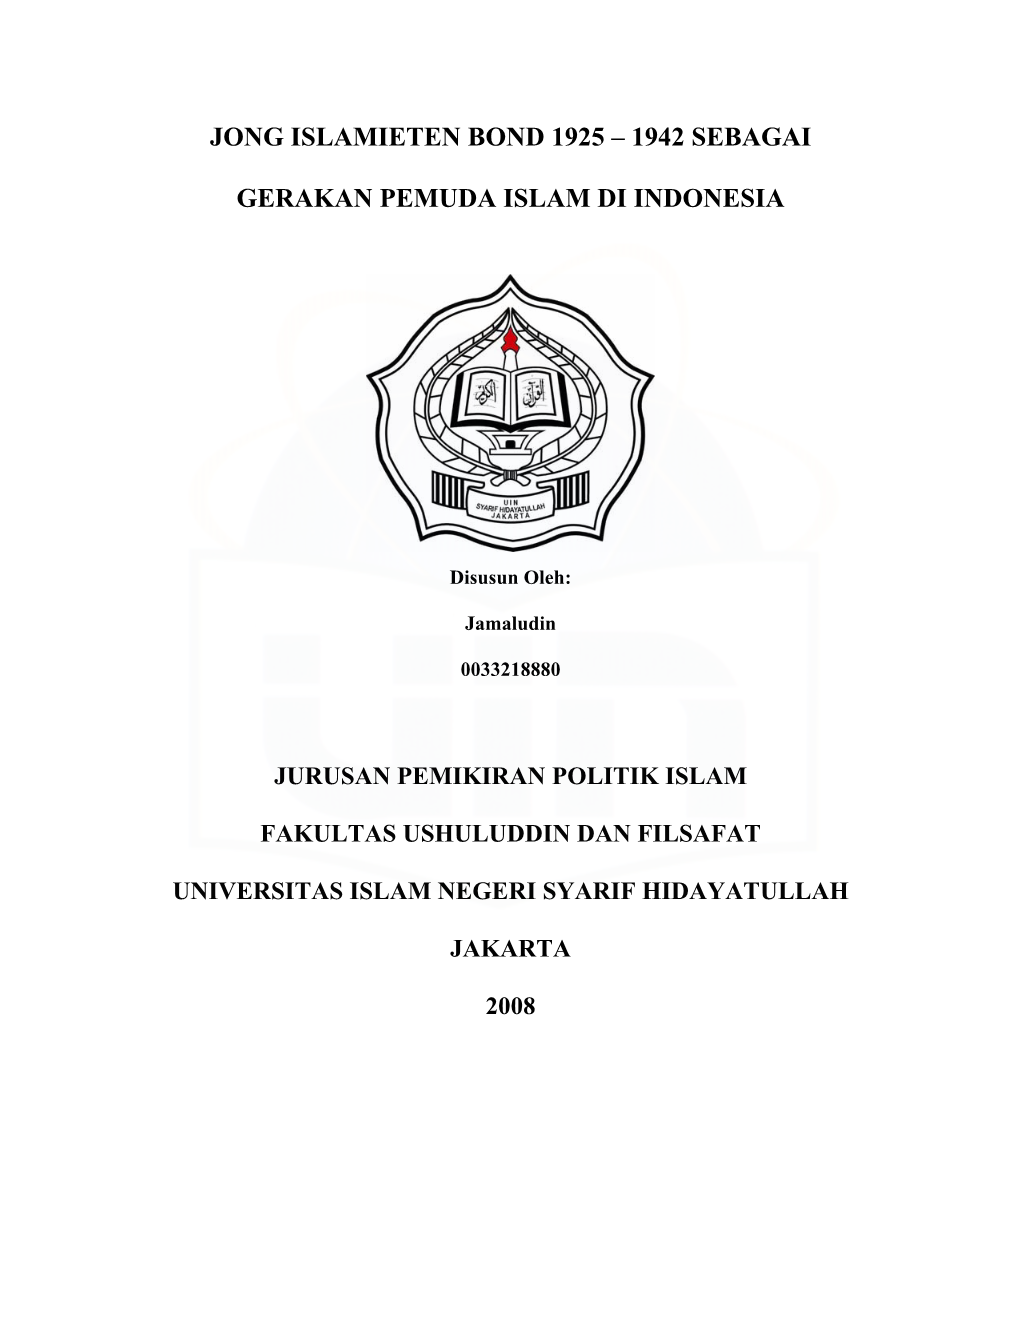 Jong Islamieten Bond 1925 – 1942 Sebagai Gerakan Pemuda Islam Di Indonesia